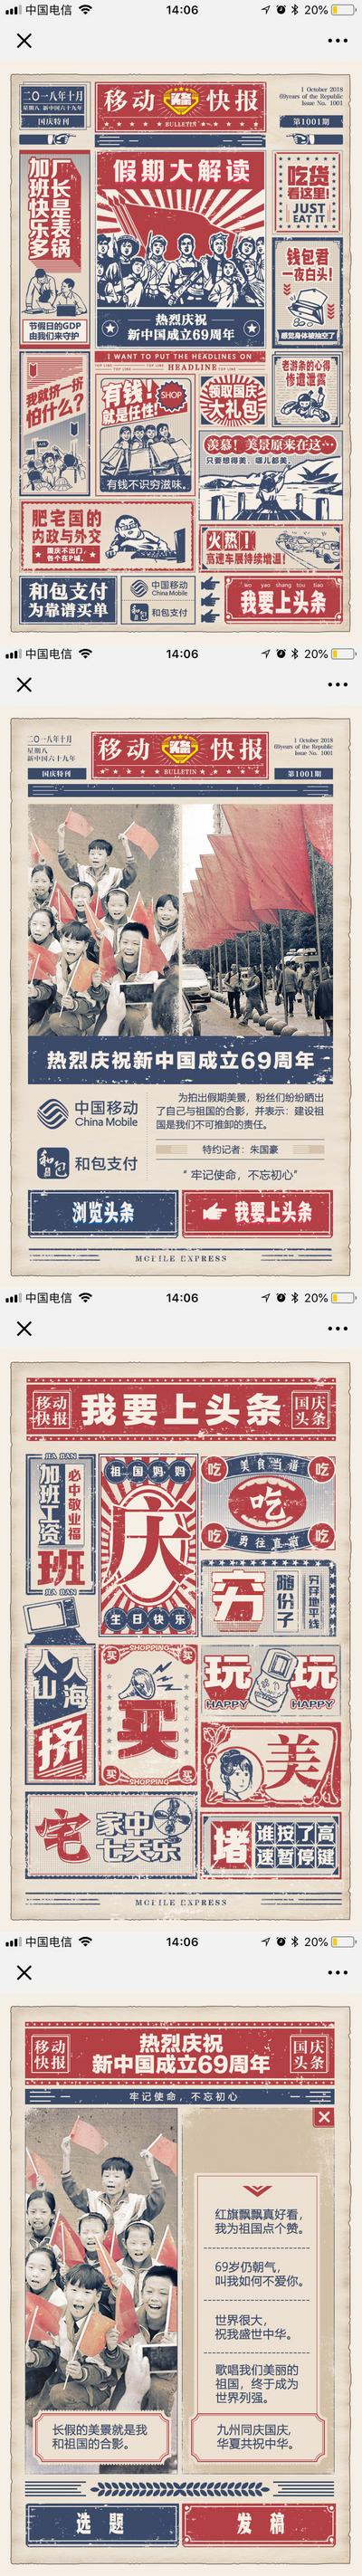 南门网 广告 创意 复古 国庆 H5 头条 新闻 资讯